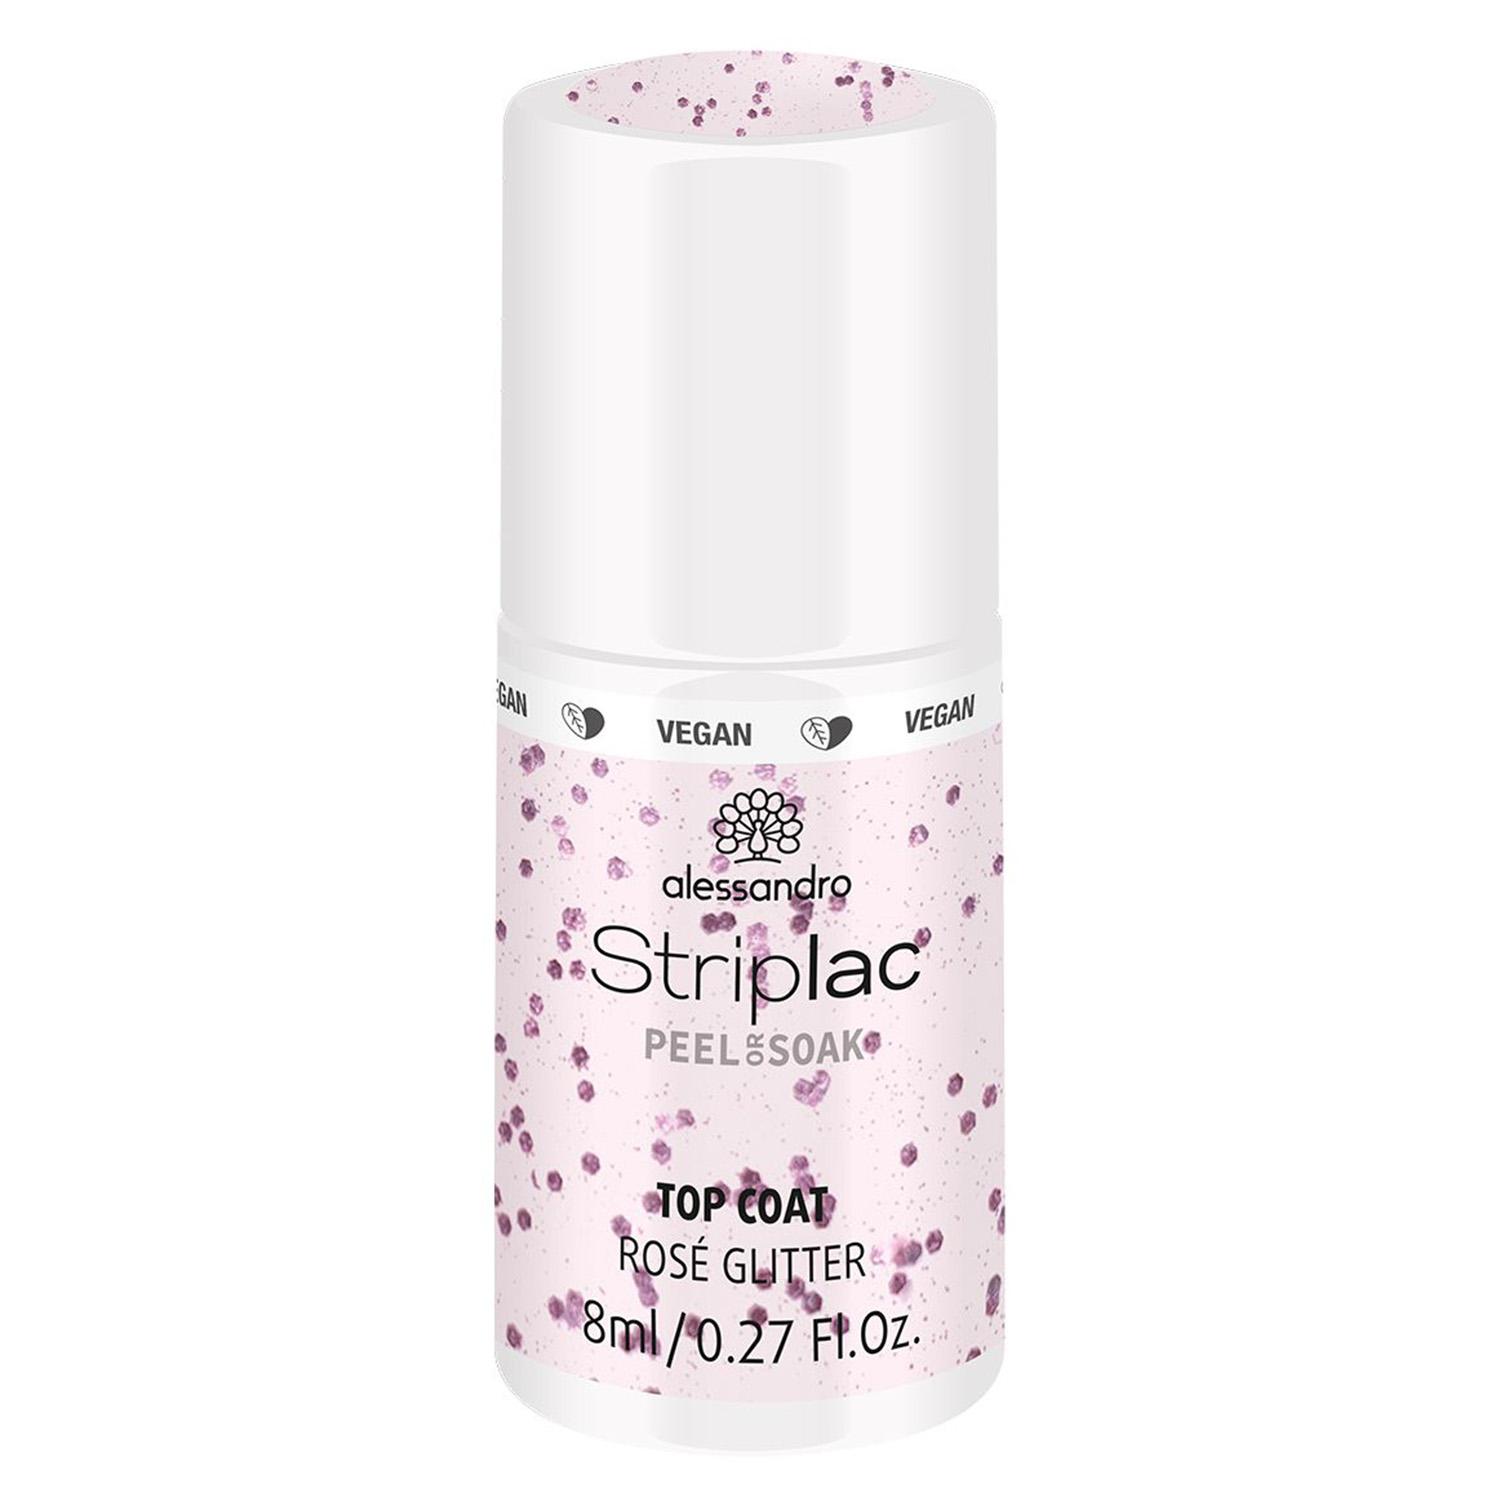 Striplac Peel or Soak - Top Coat Rose Glitter